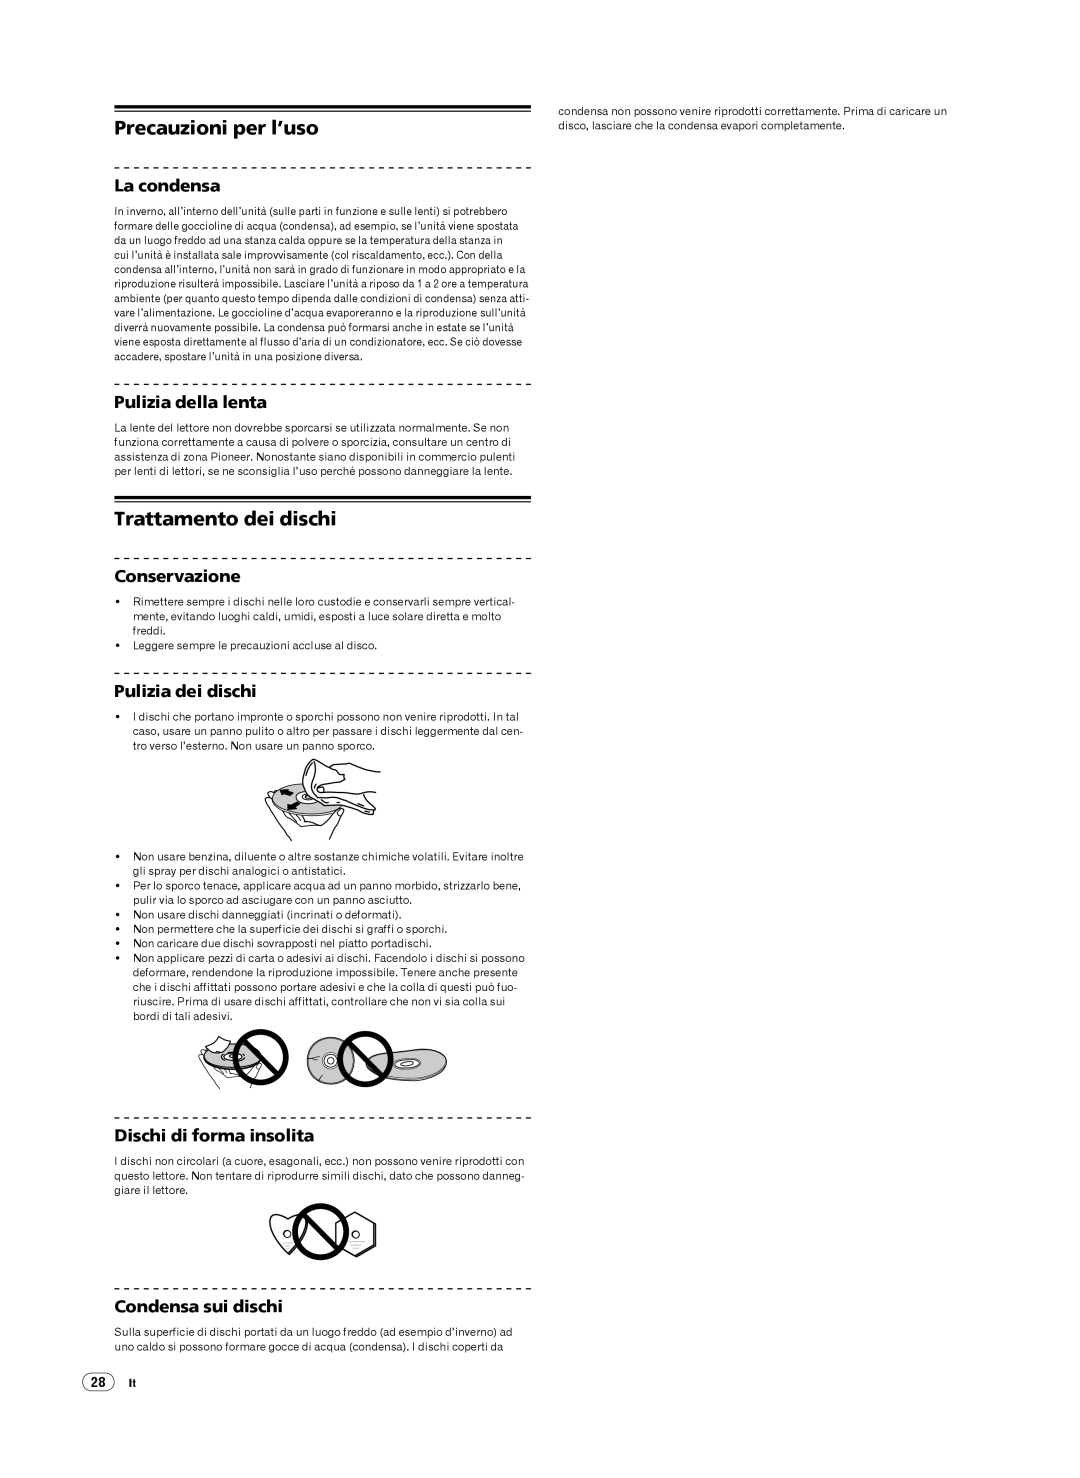 Pioneer CDJ-900 Precauzioni per l’uso, Trattamento dei dischi, La condensa, Pulizia della lenta, Conservazione 